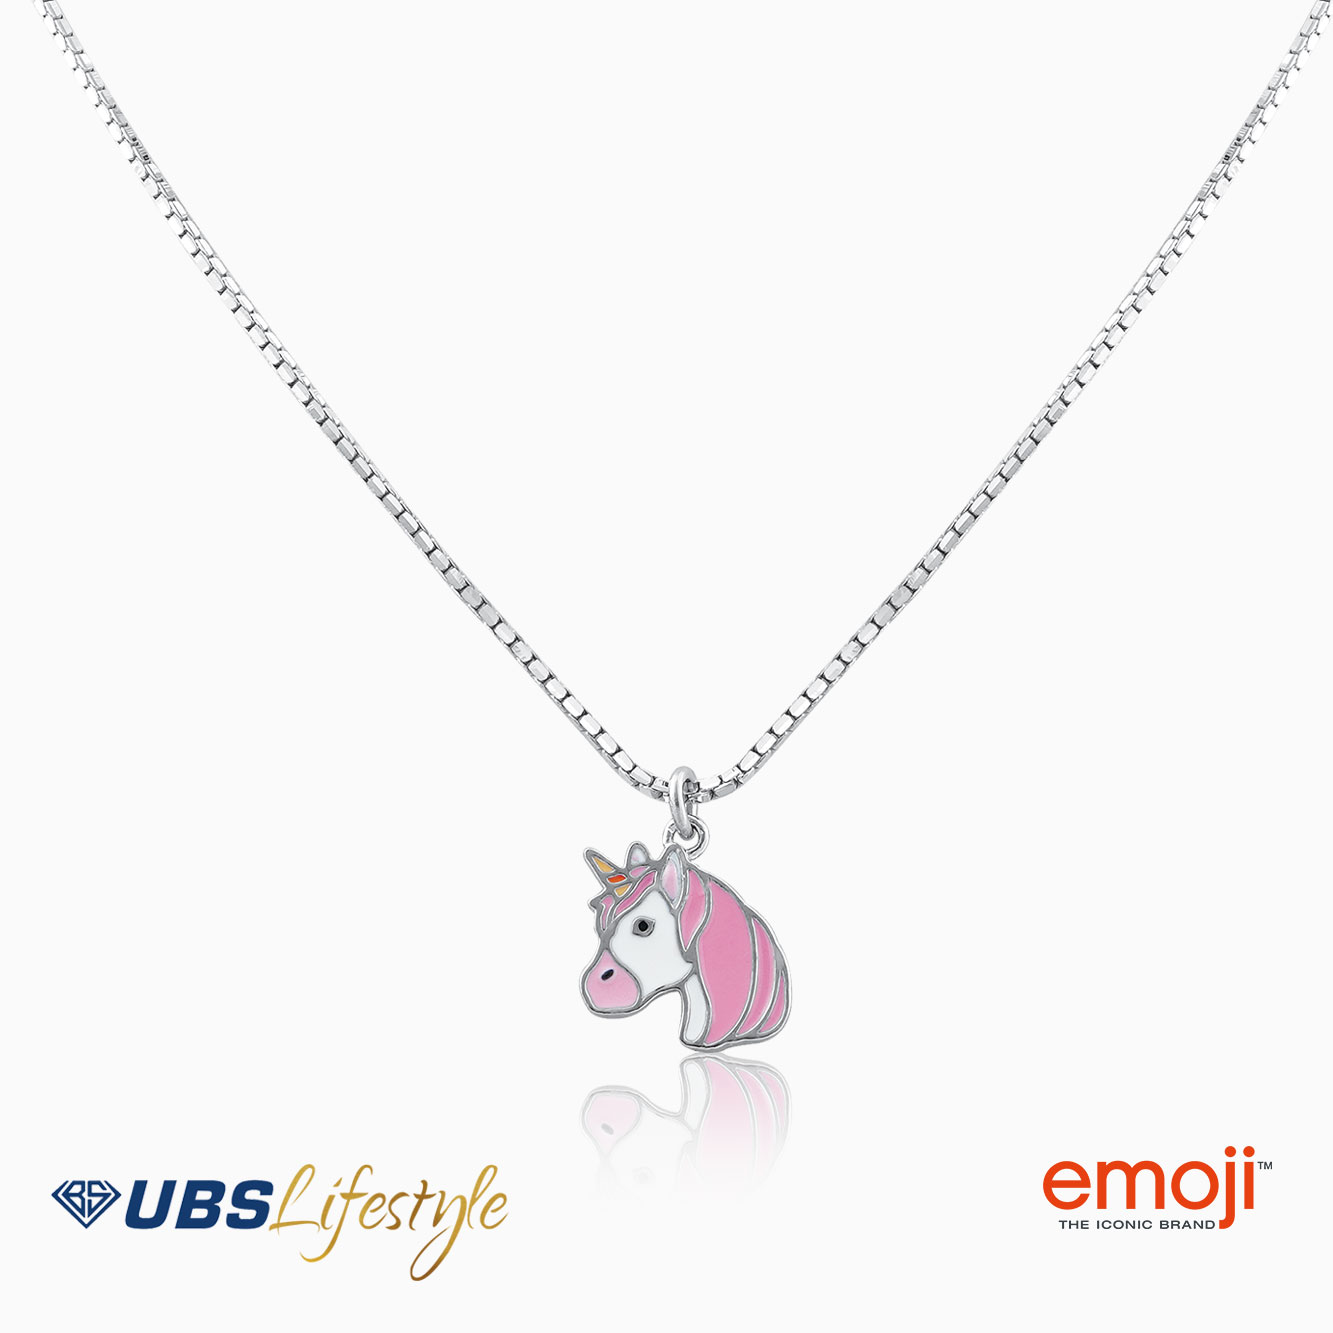 UBS Kalung Emas Anak Emoji - Kkq0001P - 17K - Pink